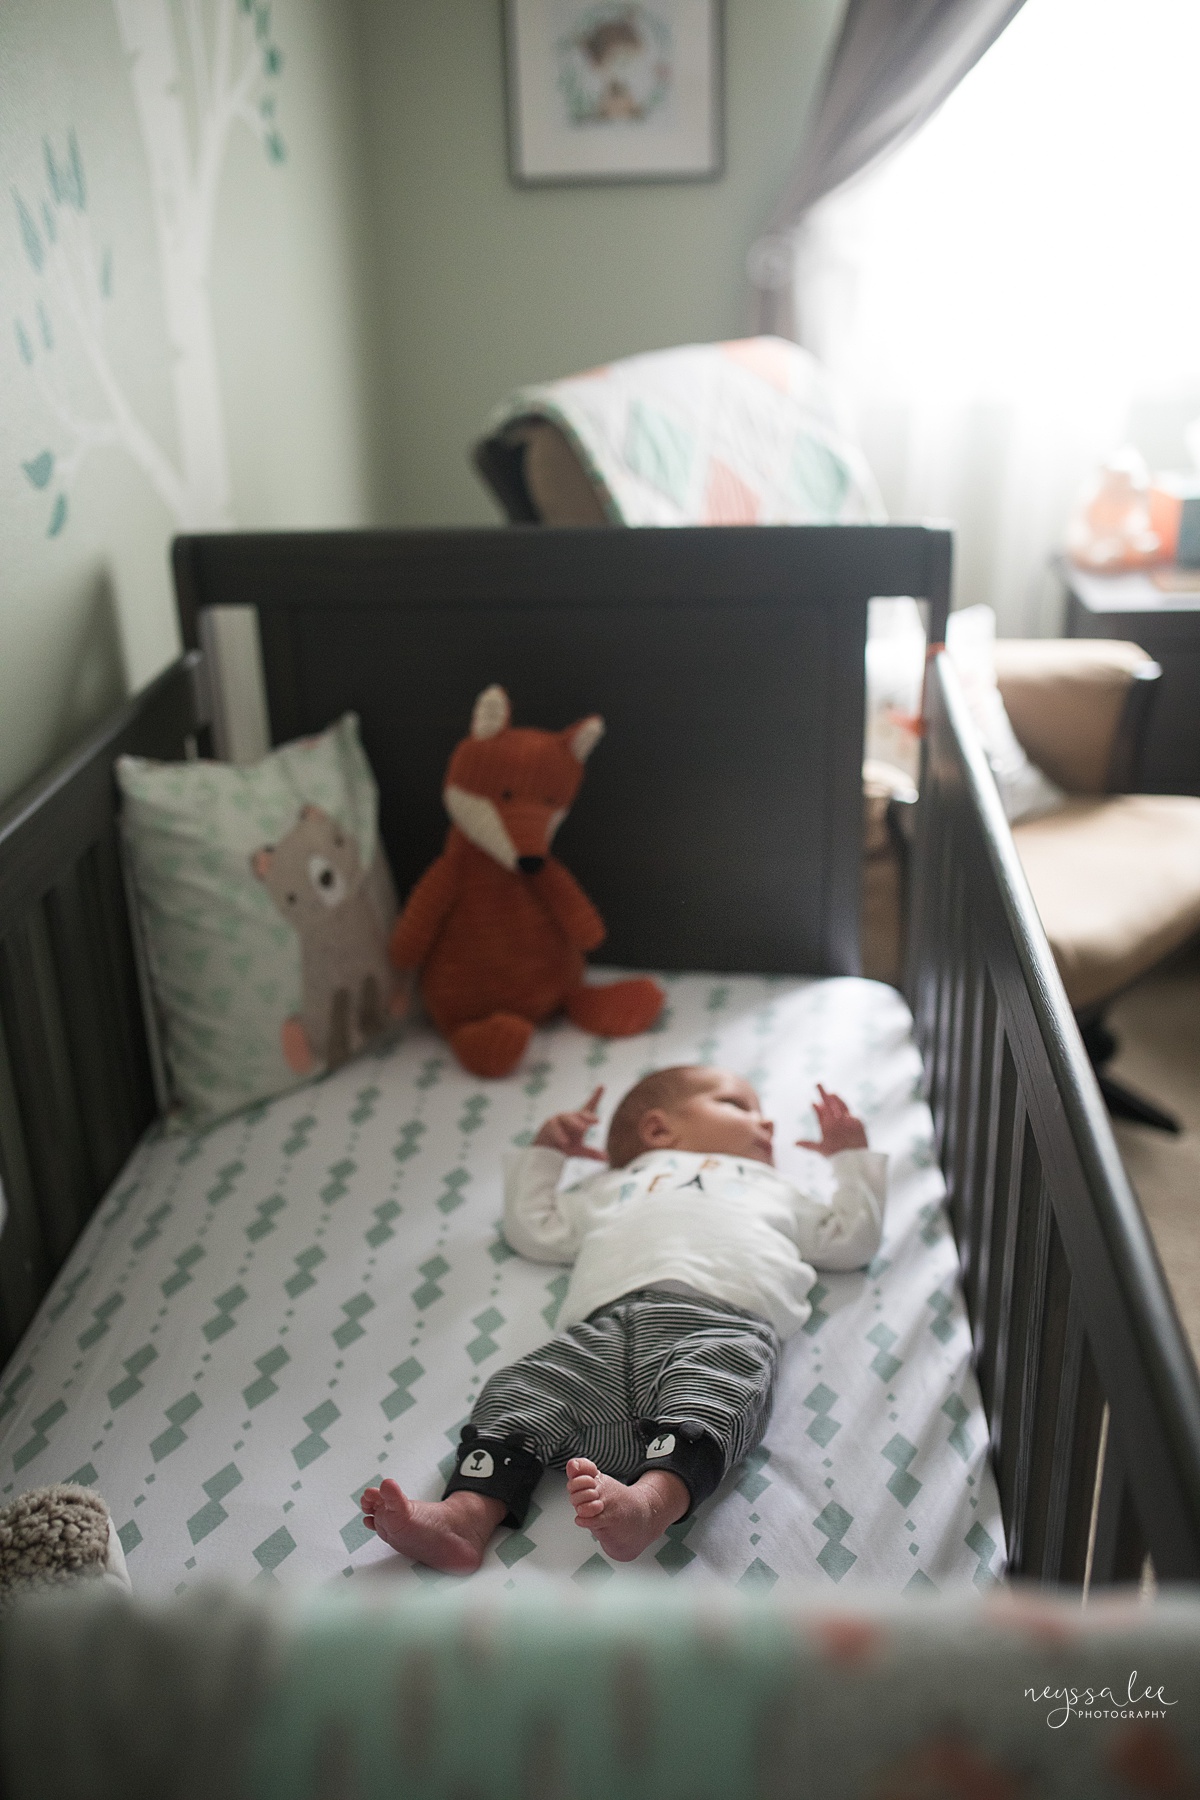  Photo of newborn baby laying in crib